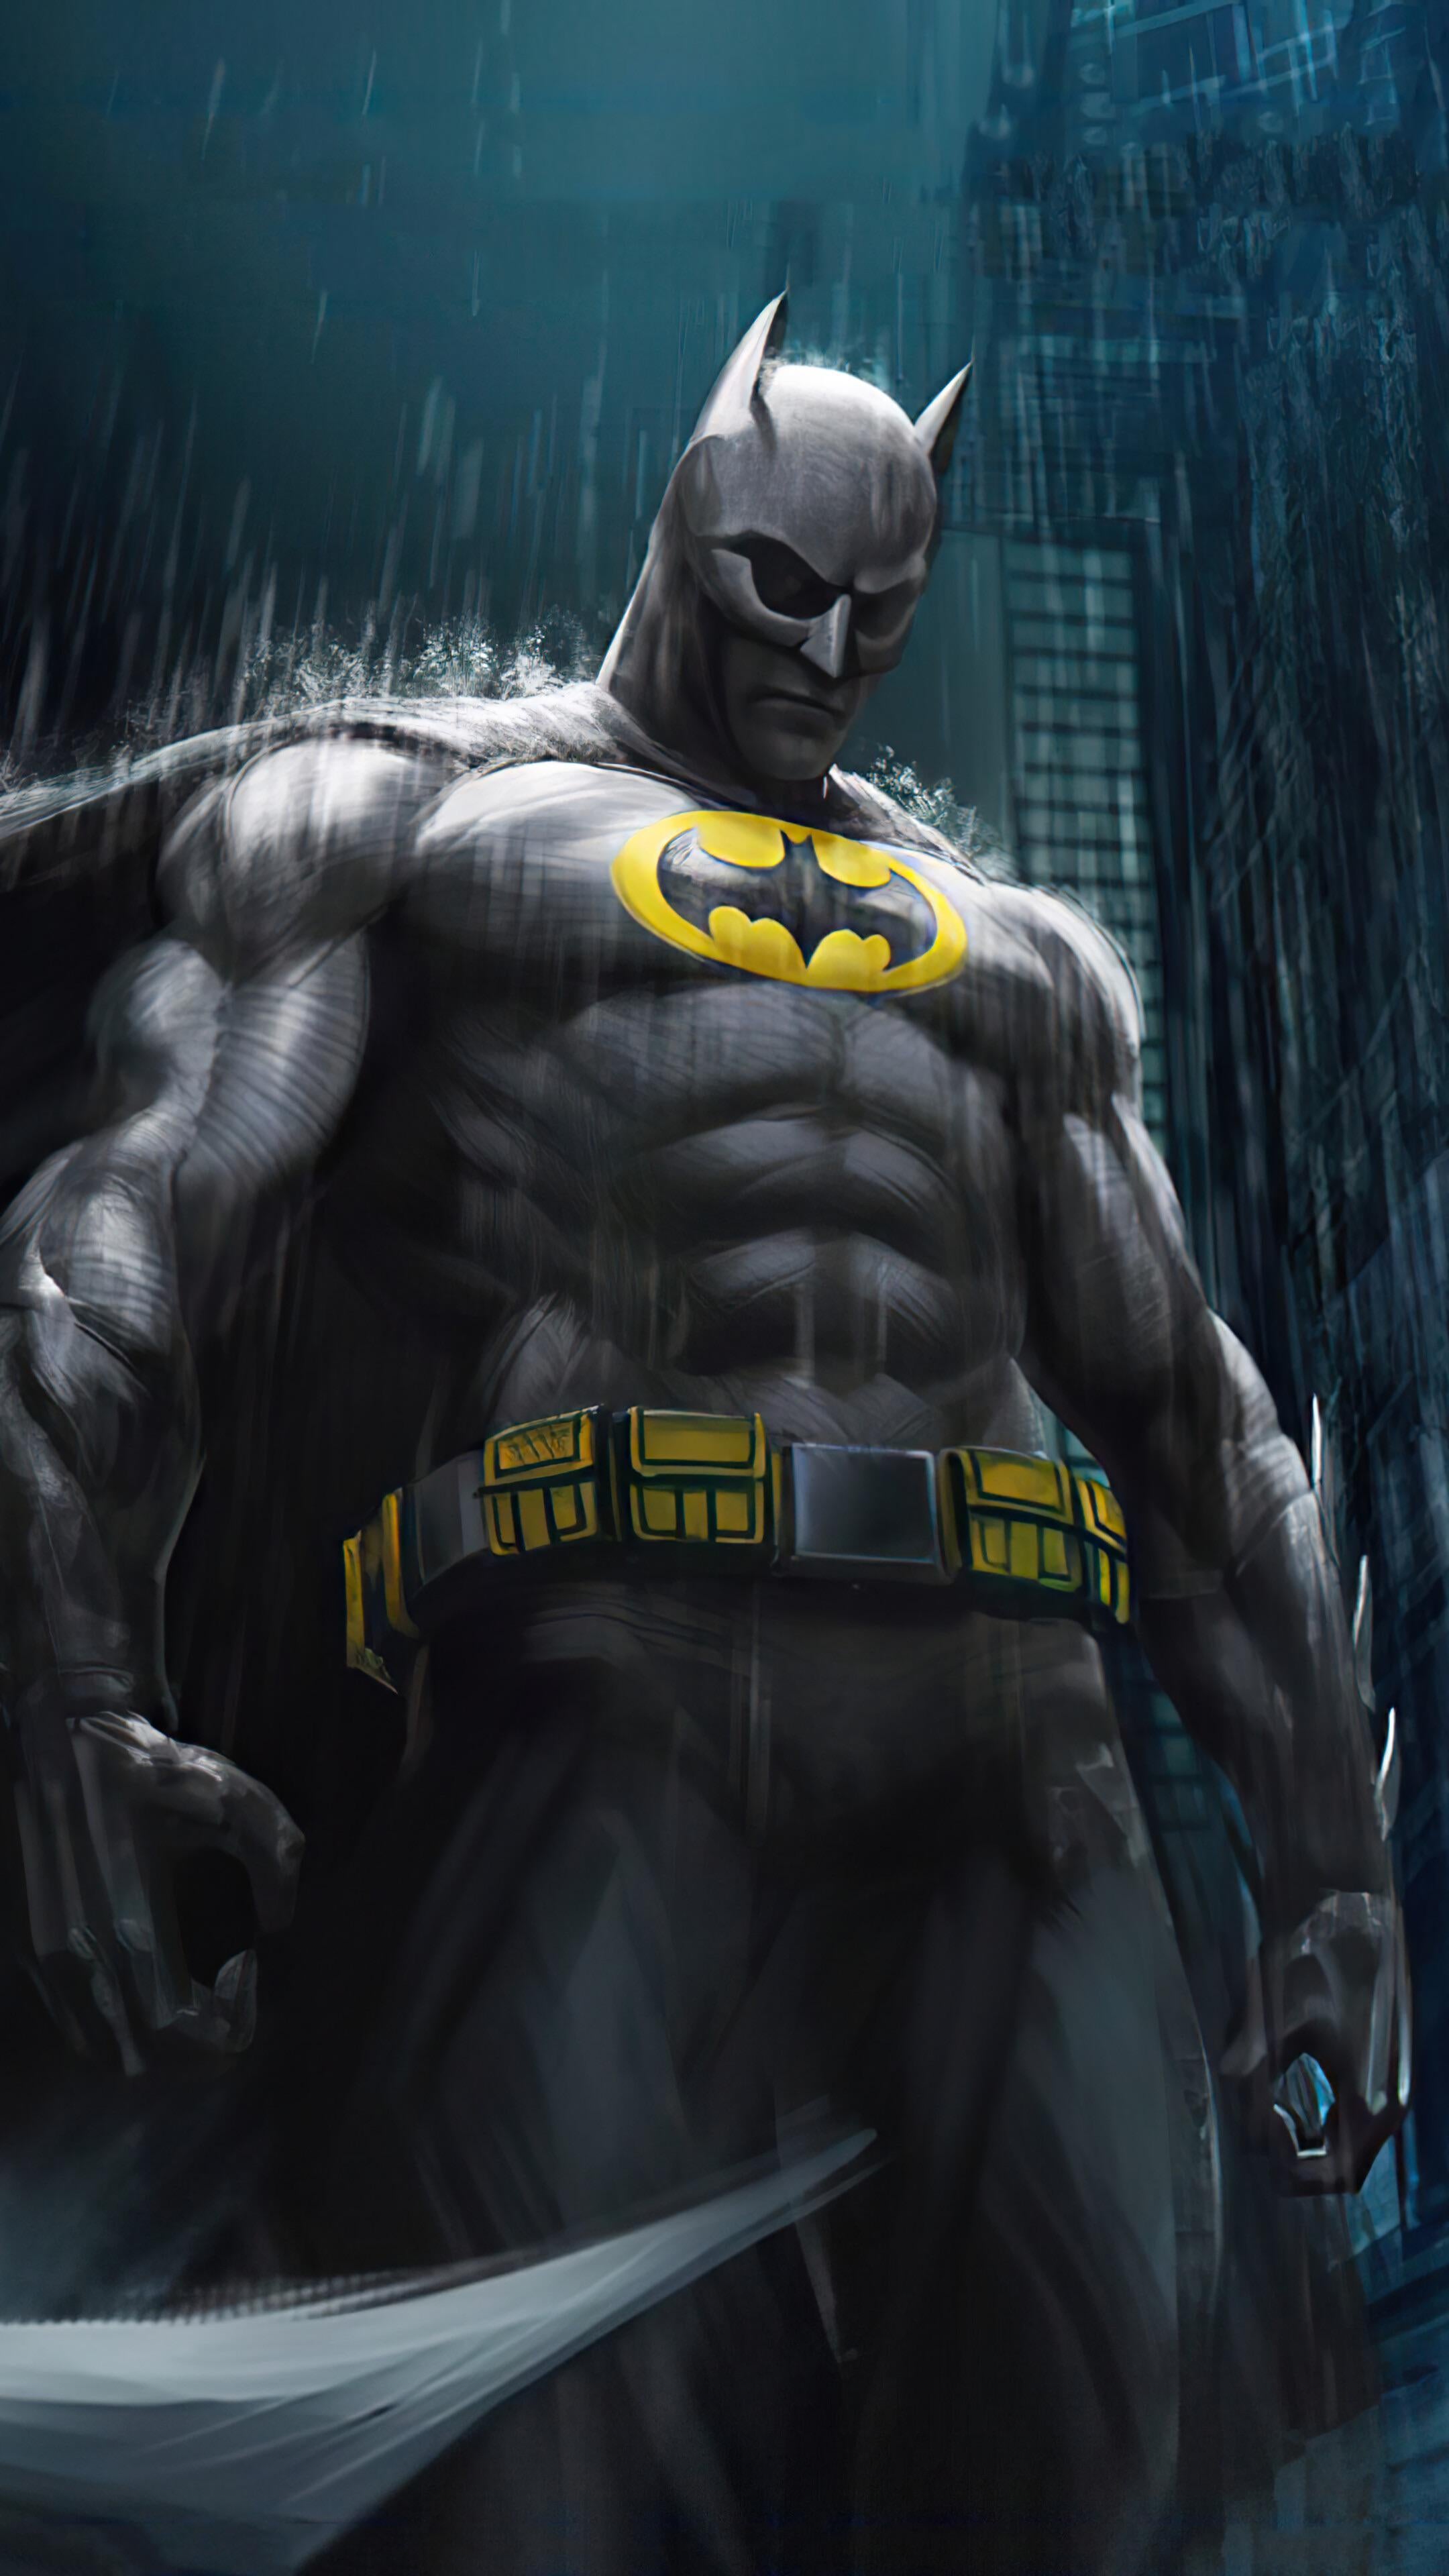 Wallpaper Batman, Superhero, dc Comics, Comics, Cartoon, Background -  Download Free Image